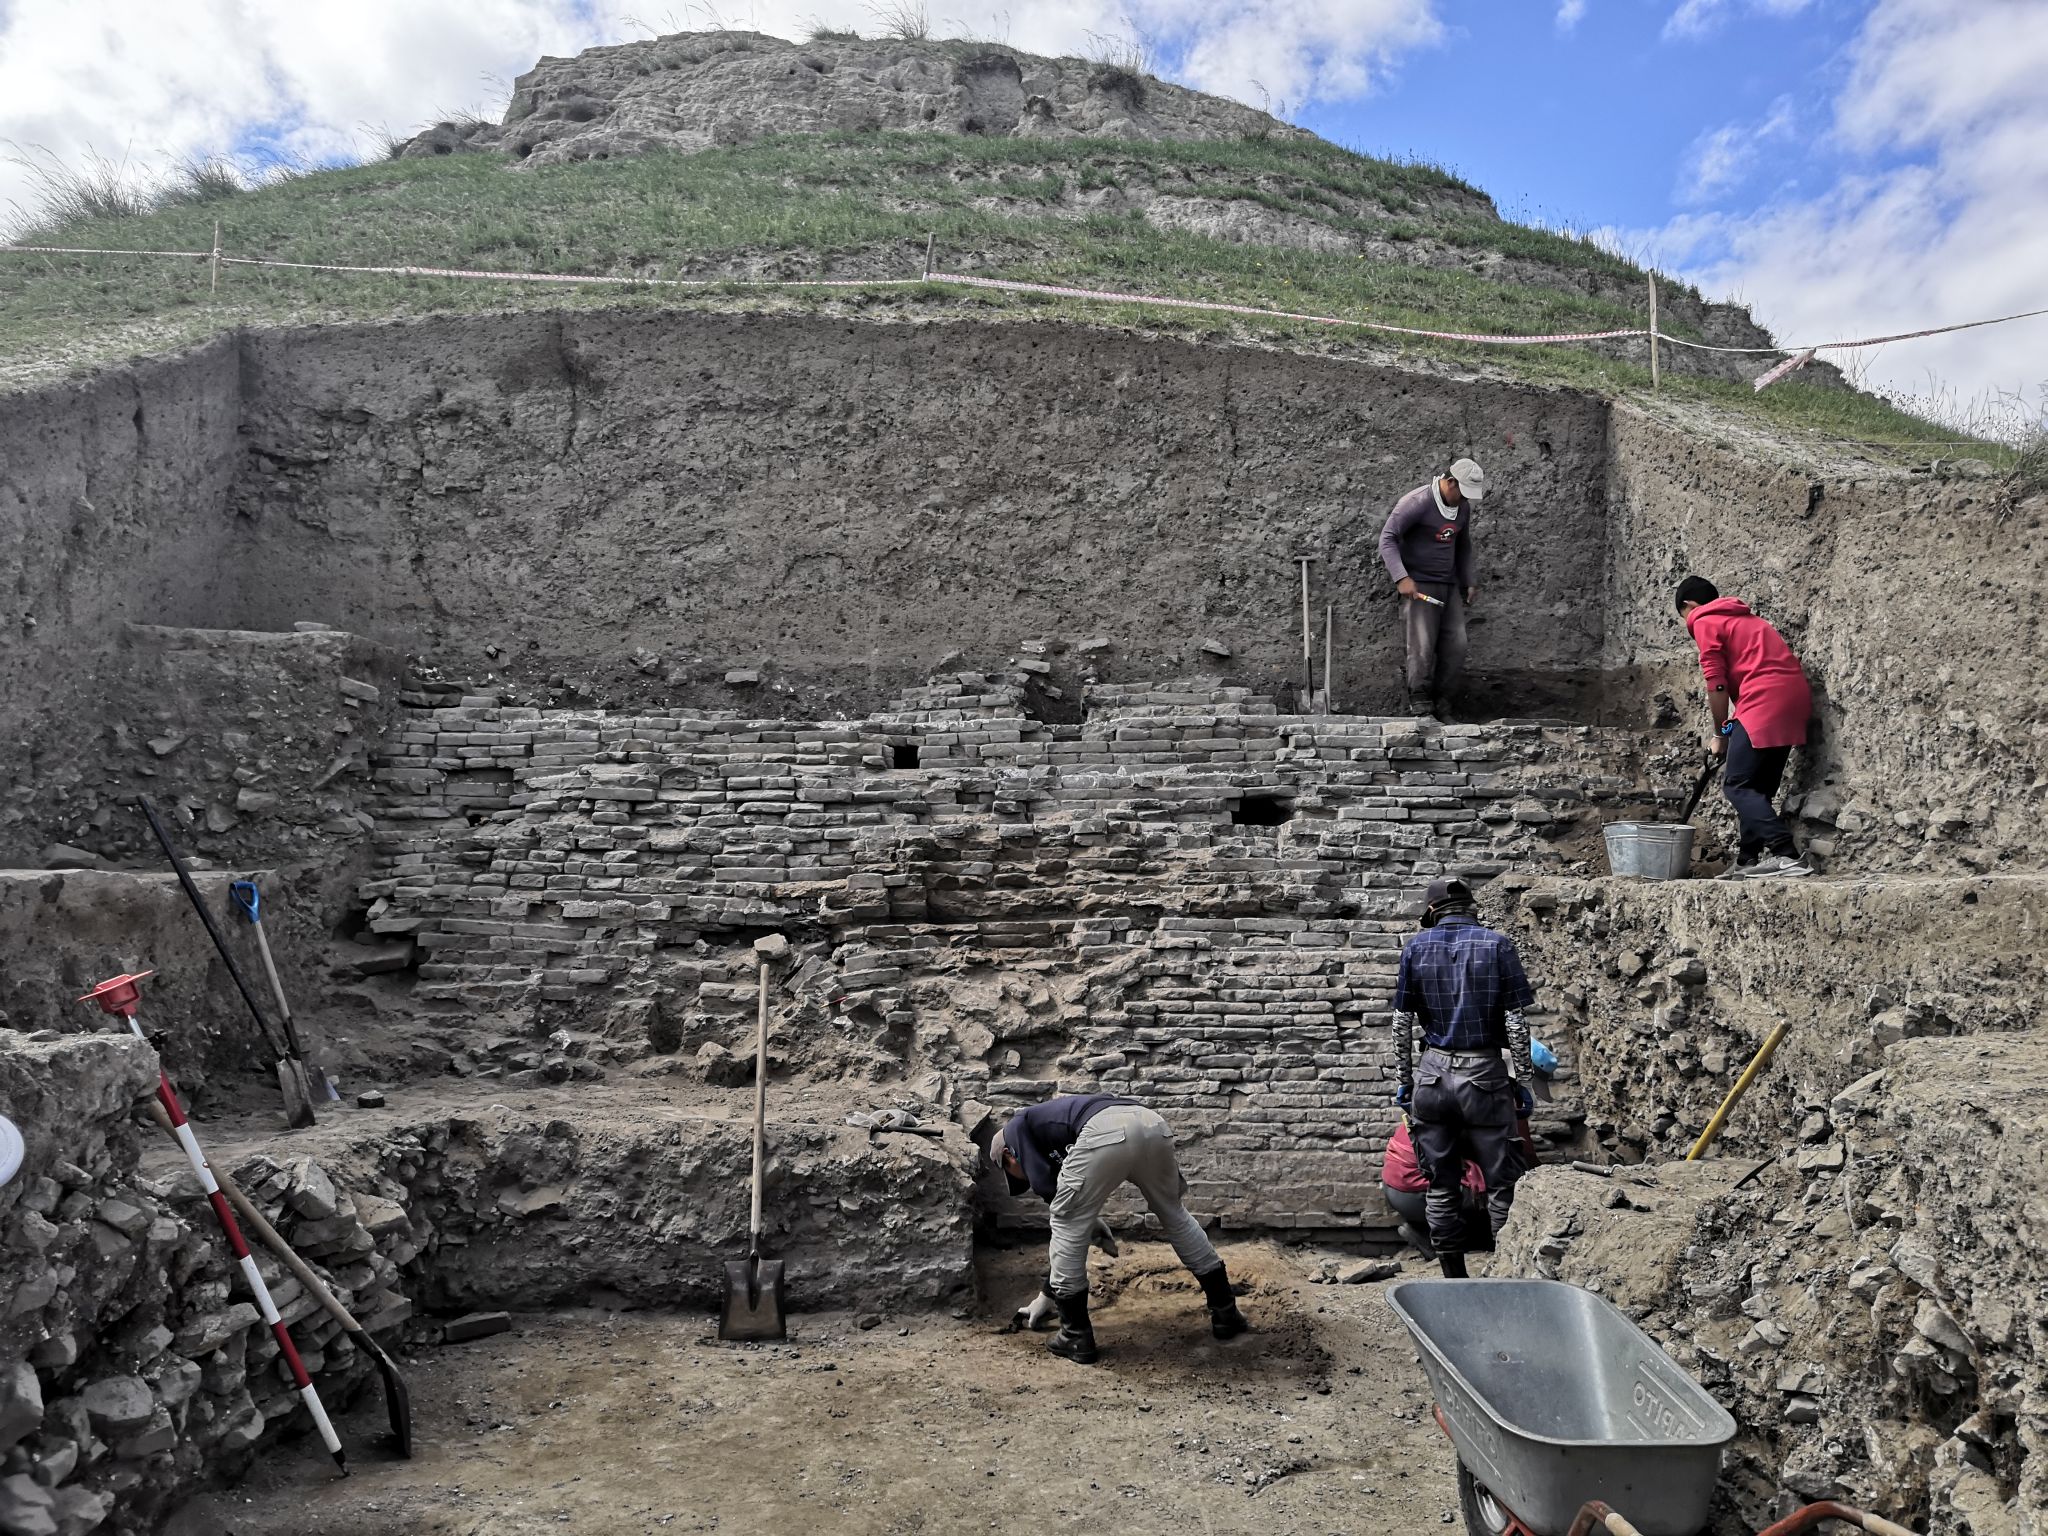 Das Bild zeigt eine archäologische Ausgrabung. In einem großen Schacht mit senkrechten Wänden ist eine historische Mauer und mehrere, an der Freilegung arbeitende Personen zu sehen.